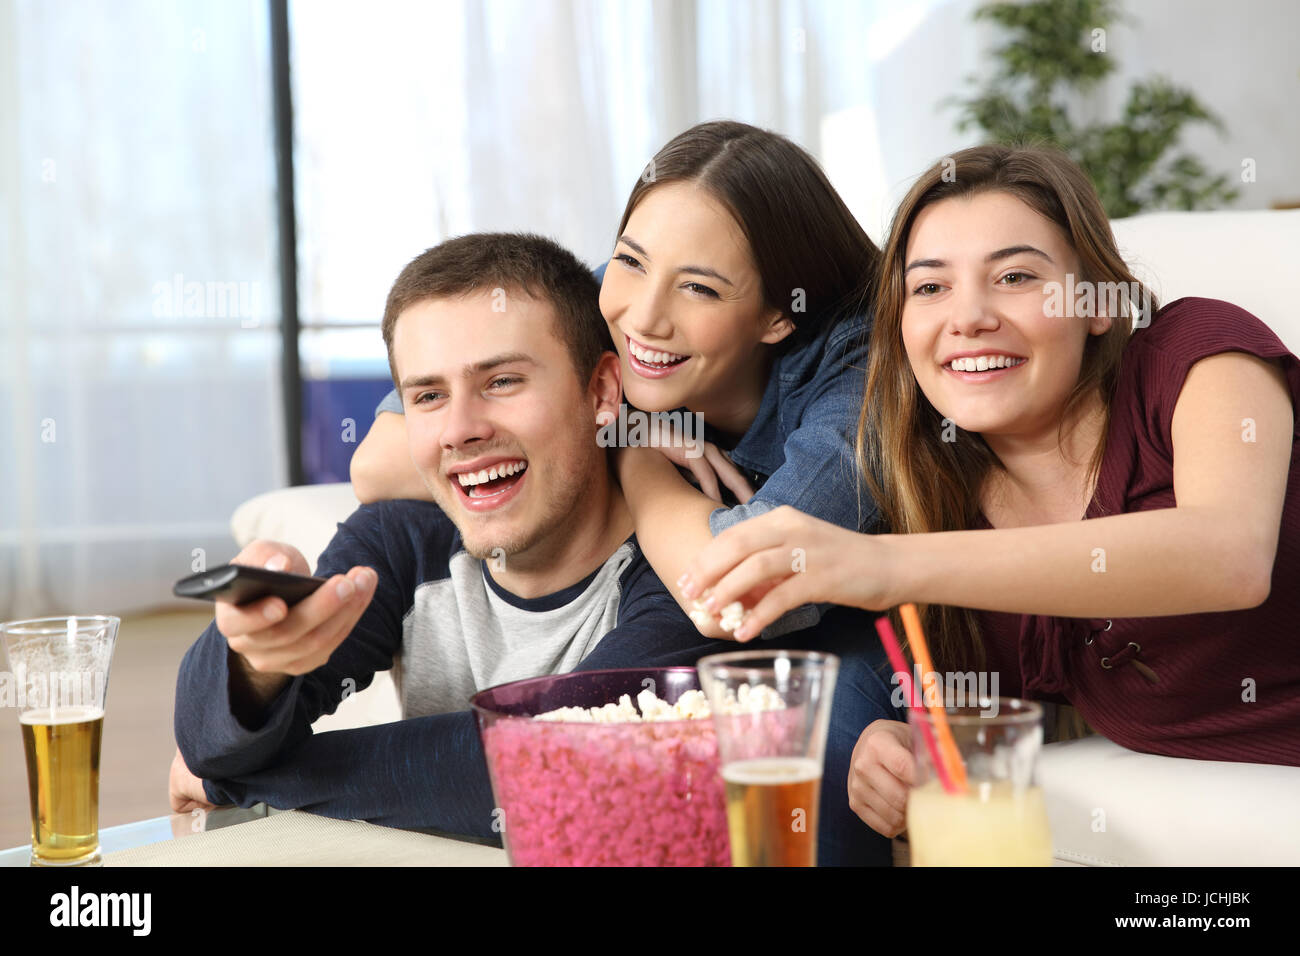 Portrait de trois amis heureux affectueuse watching TV and eating popcorn assis sur un canapé dans la salle de séjour à la maison Banque D'Images